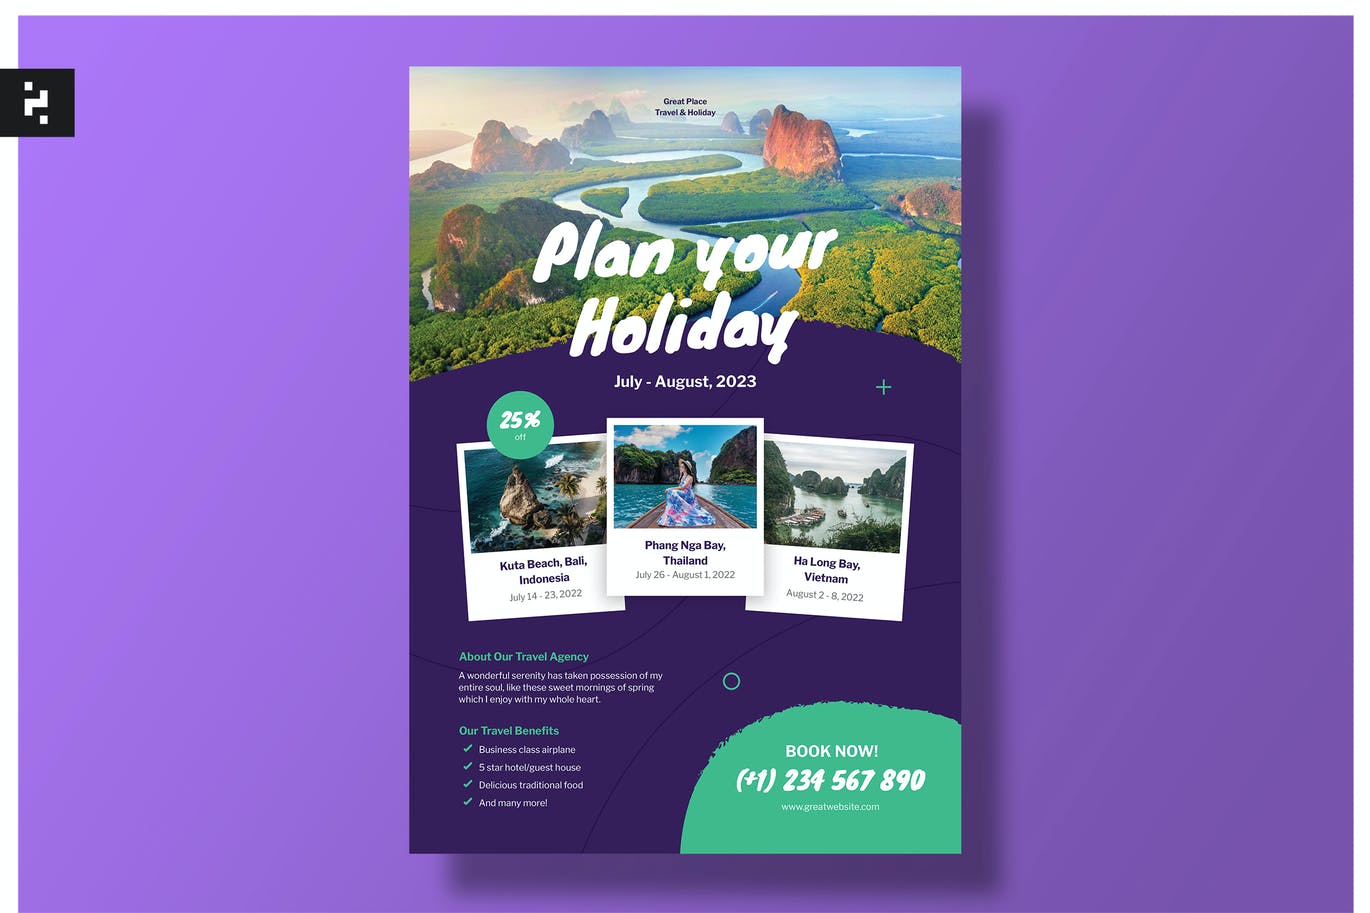 假日旅游海报设计模板 Holiday Travel Flyer Template 设计素材 第1张